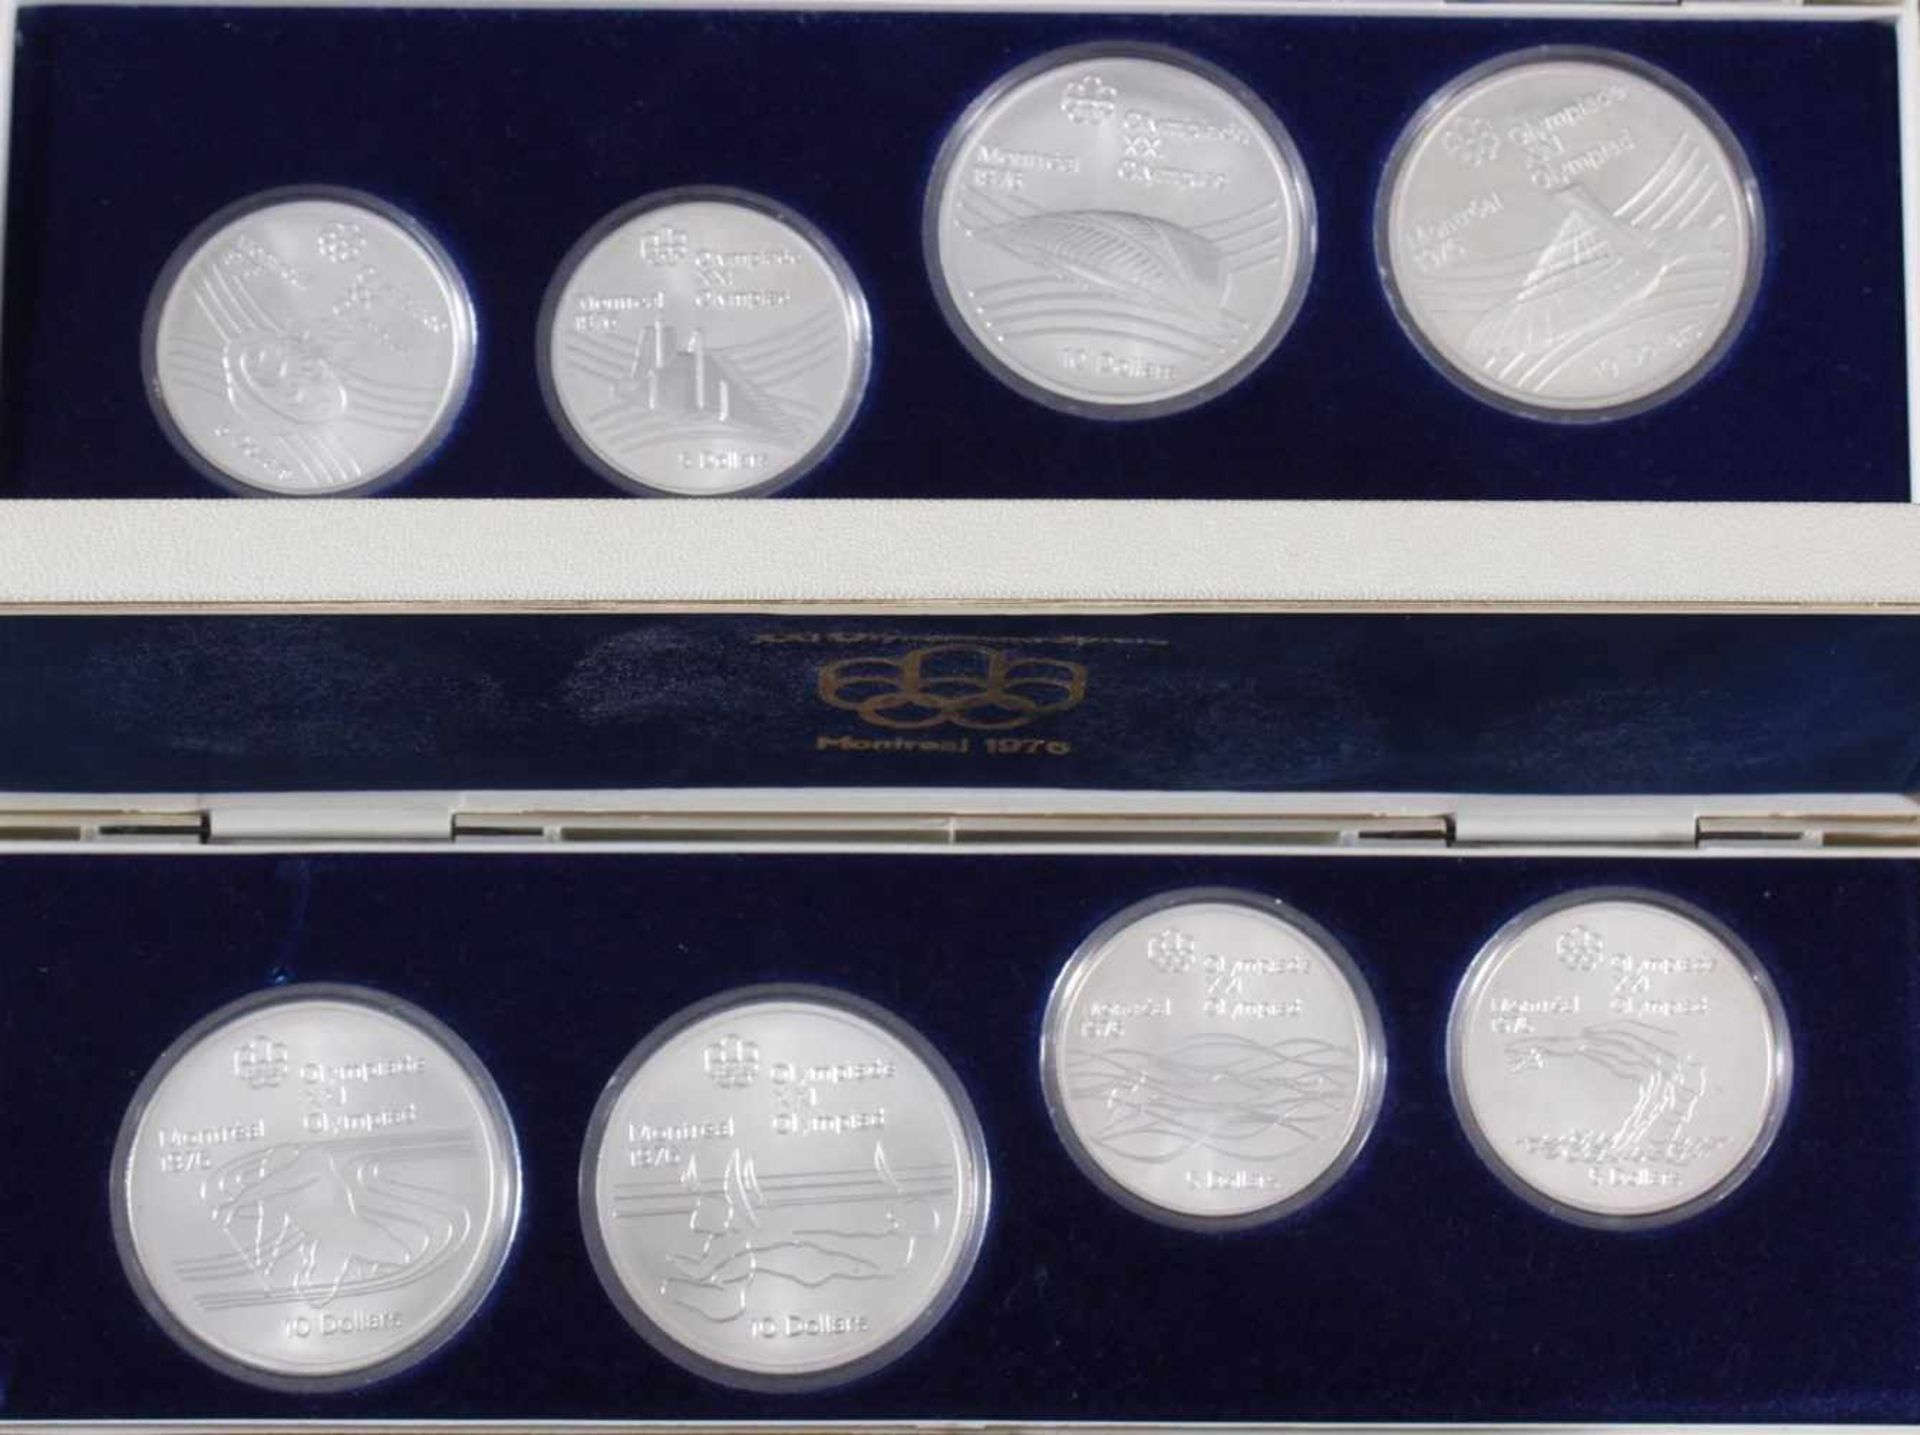 28x Silbermünzen Montreal 1976, kompletter Satz< - Bild 3 aus 5